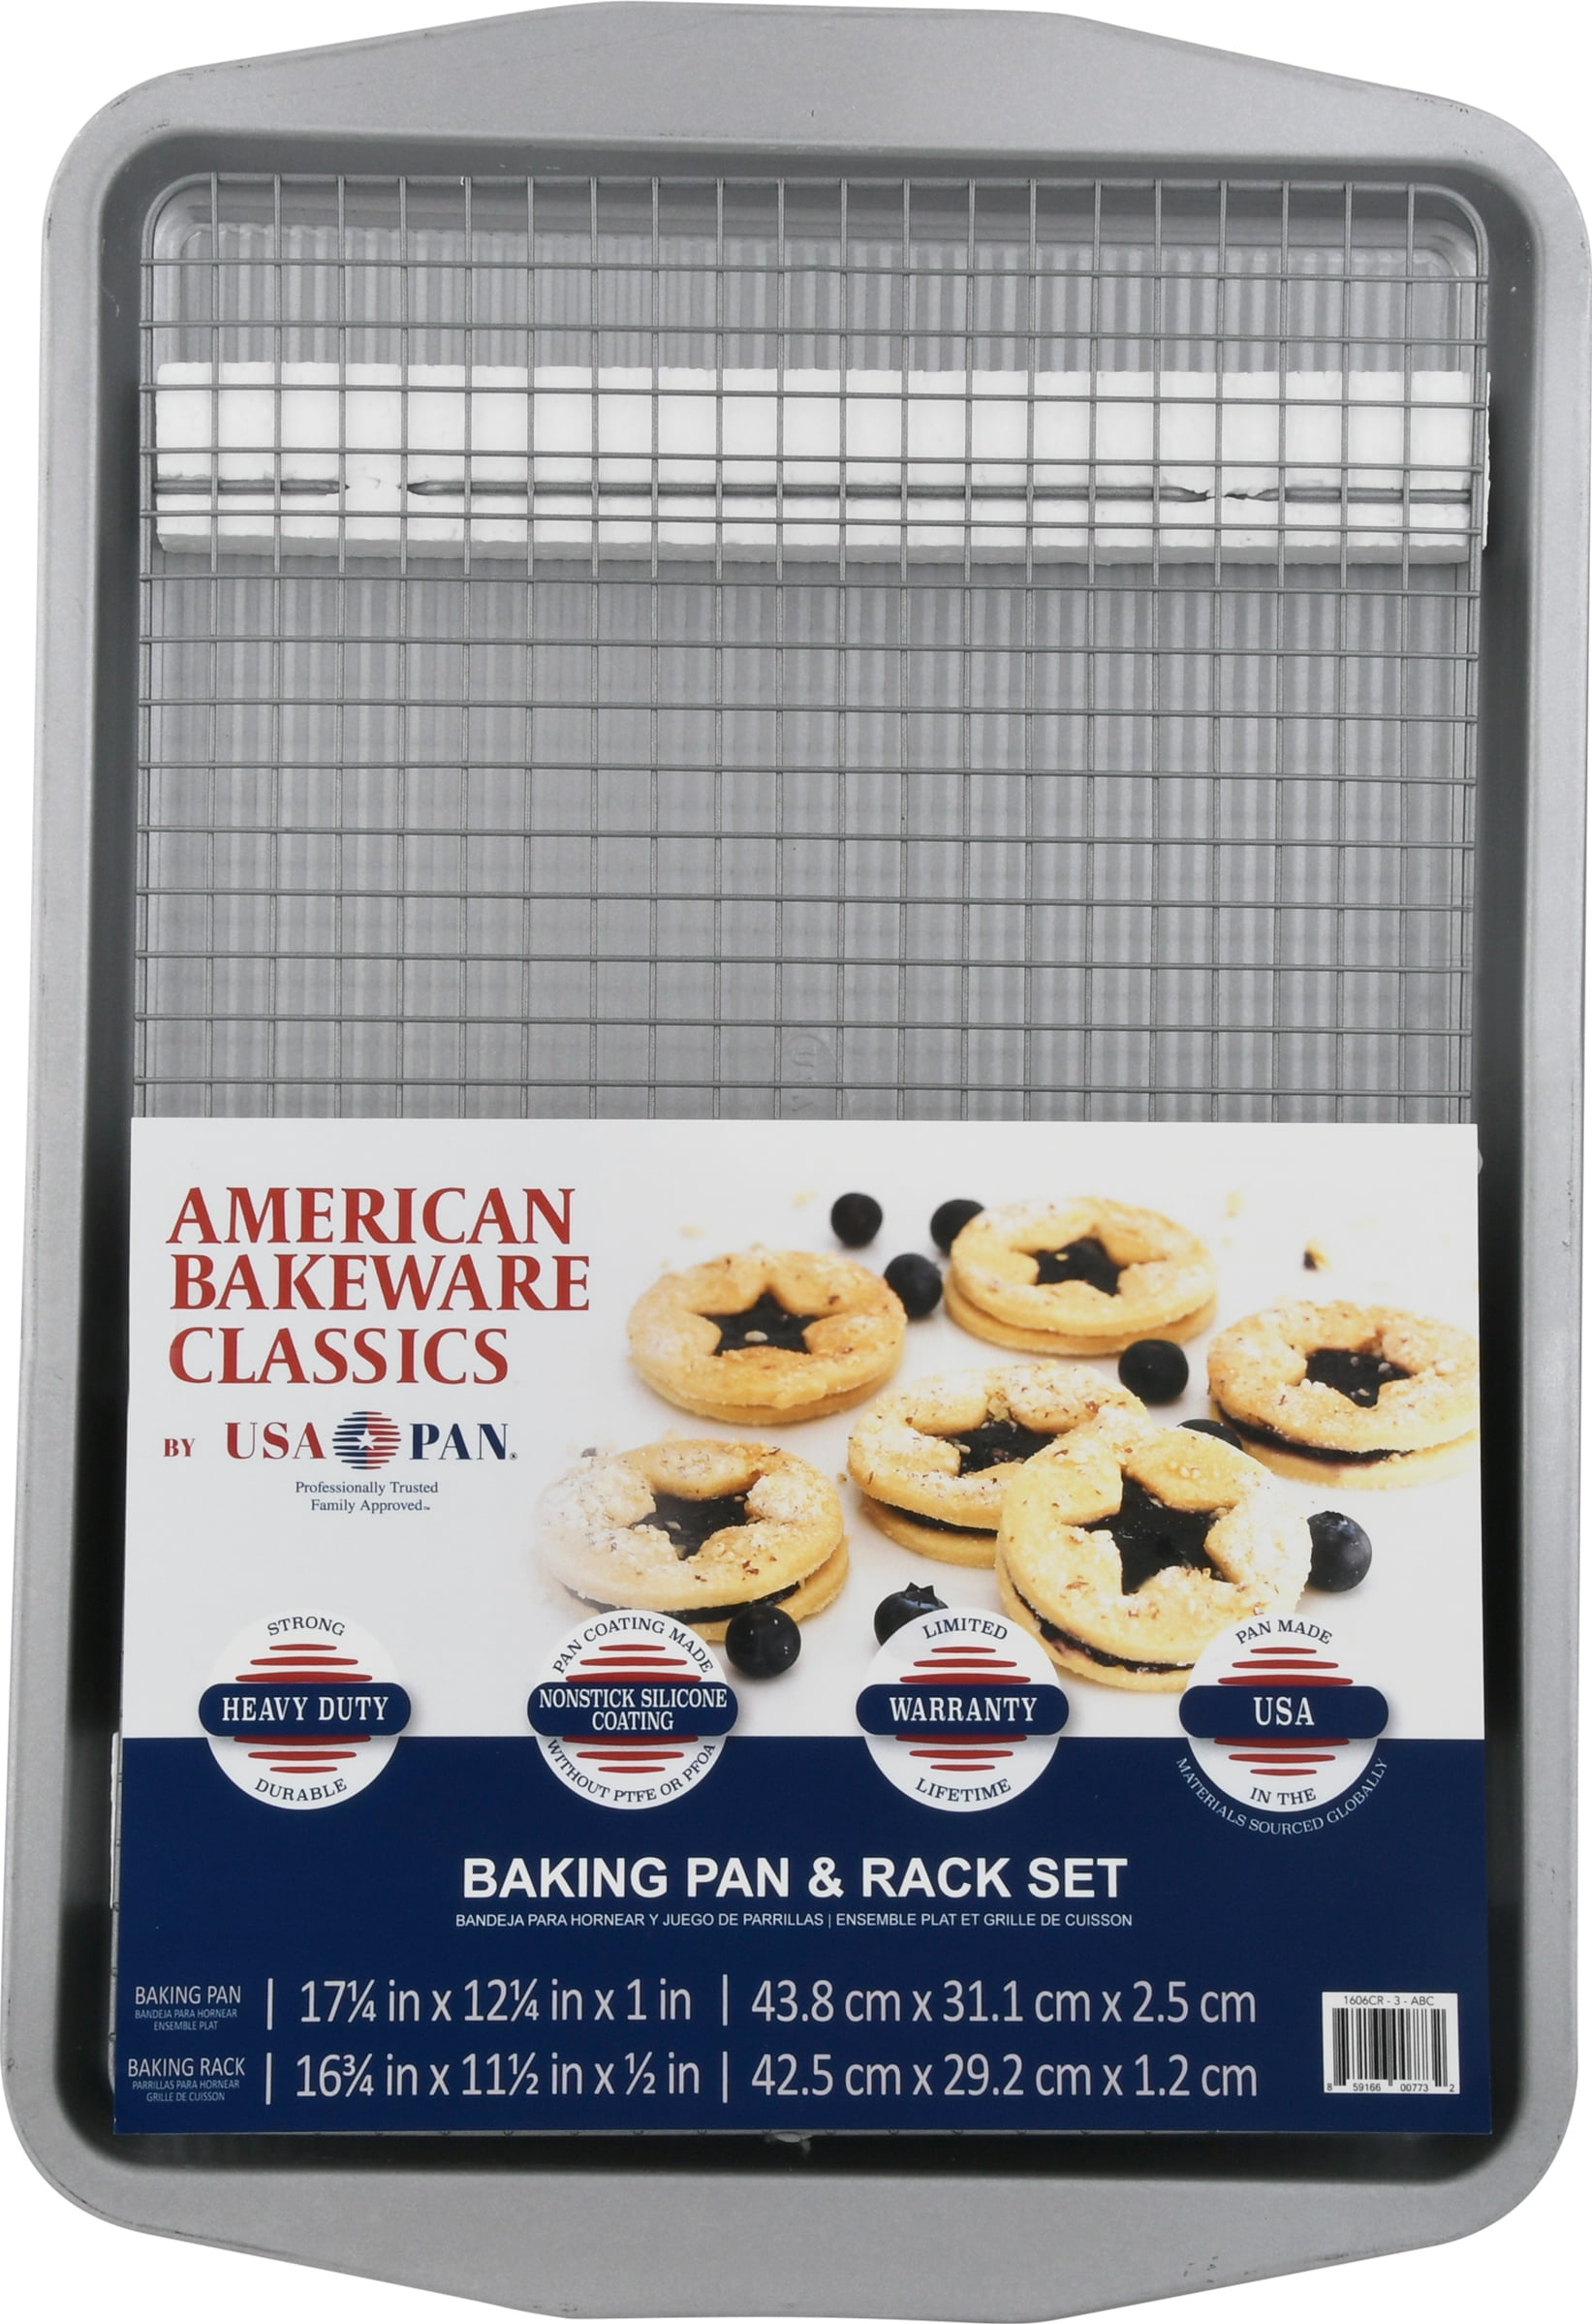 USA Pan Half Sheet Pan and Rack Set